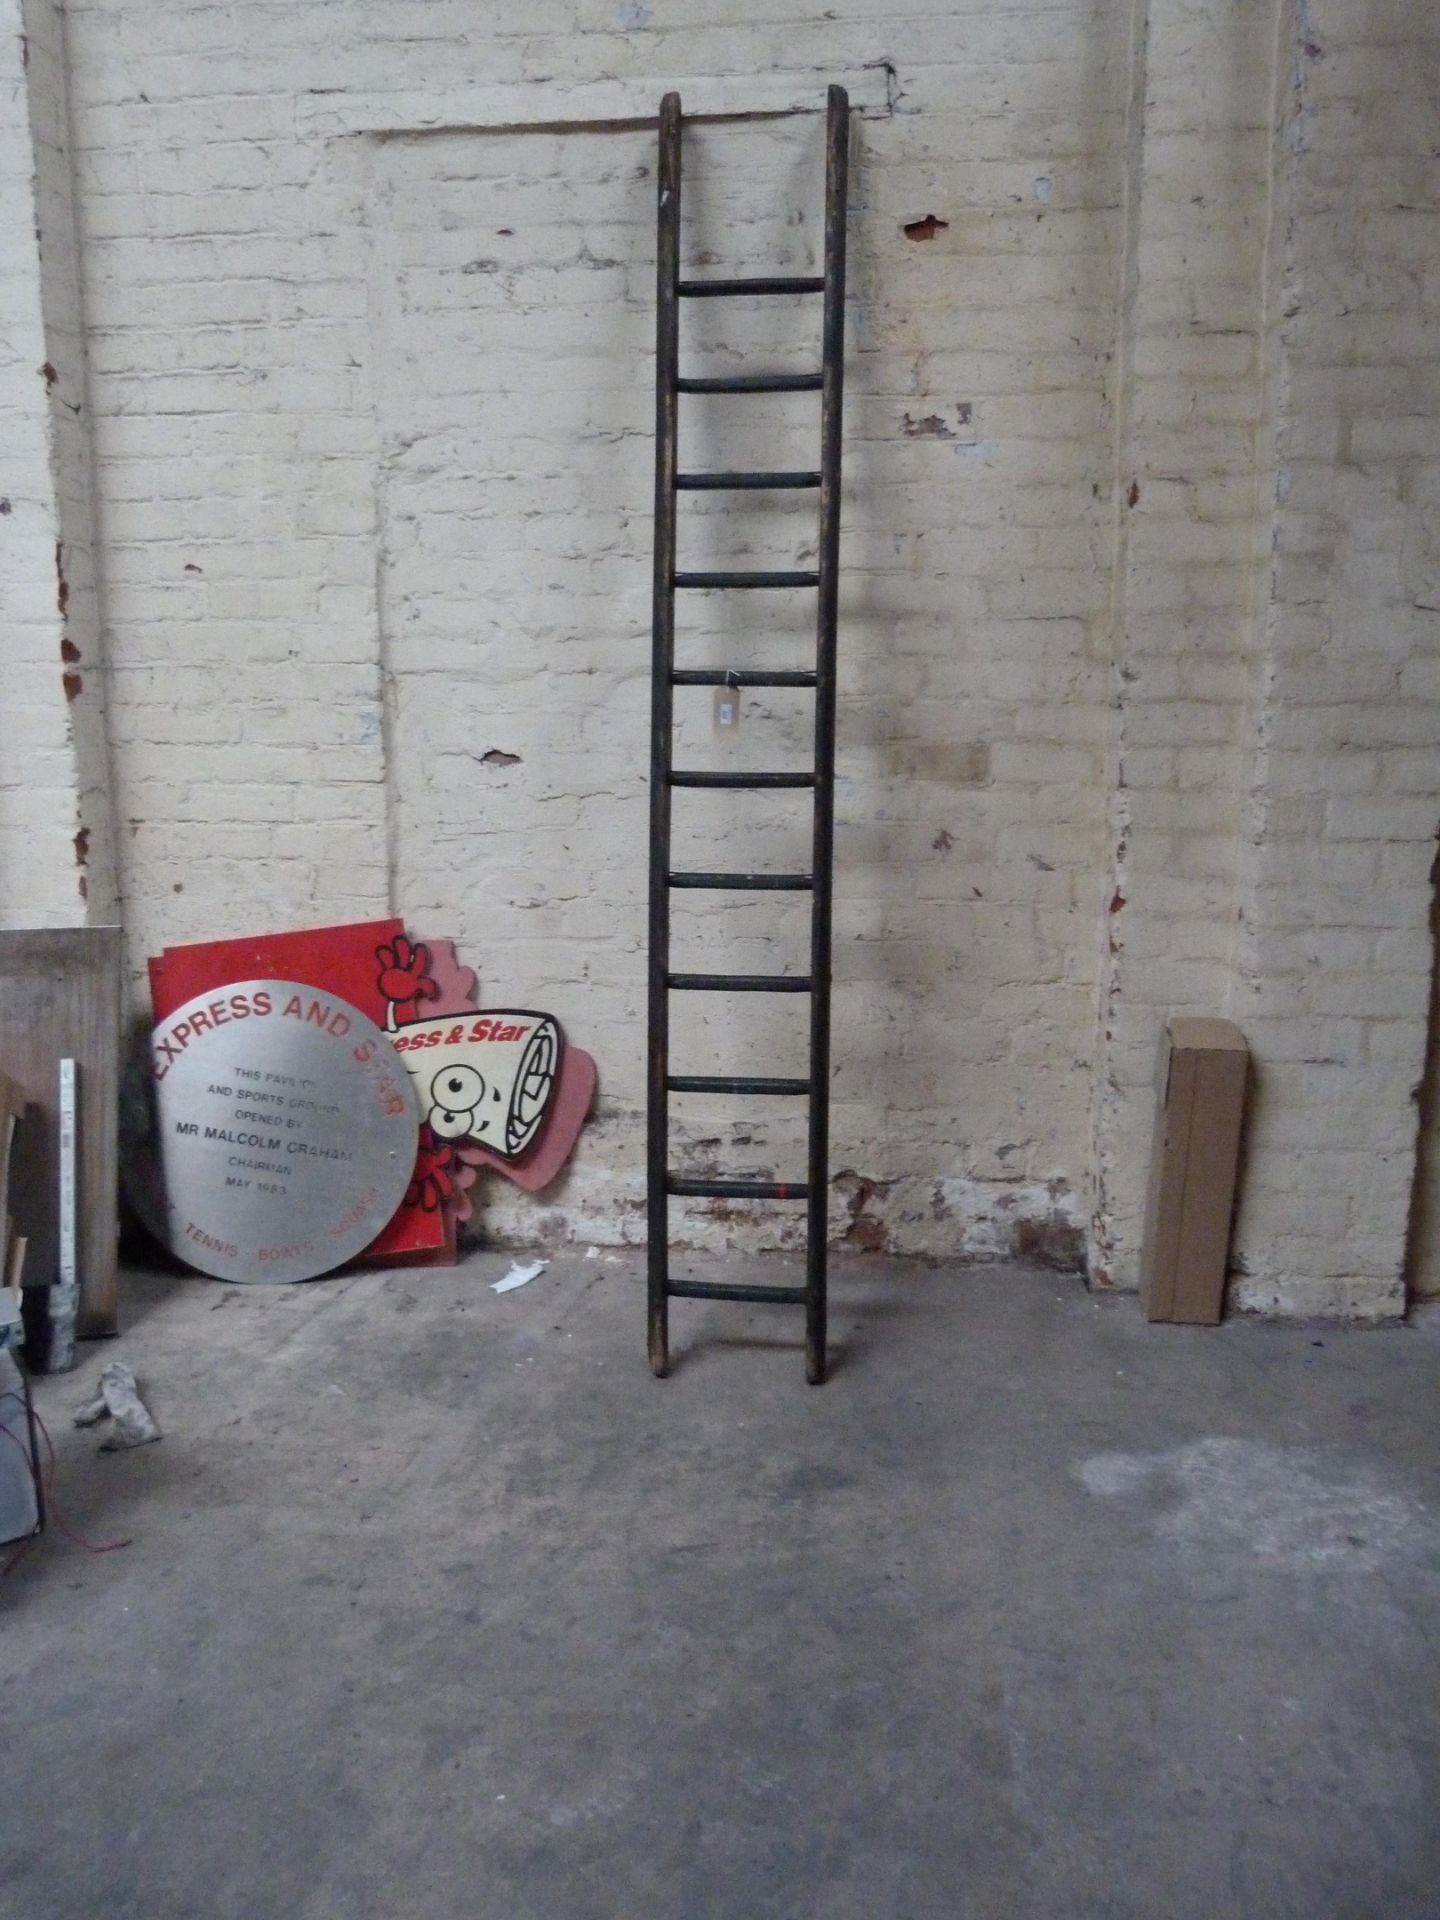 An eleven rung wooden ladder